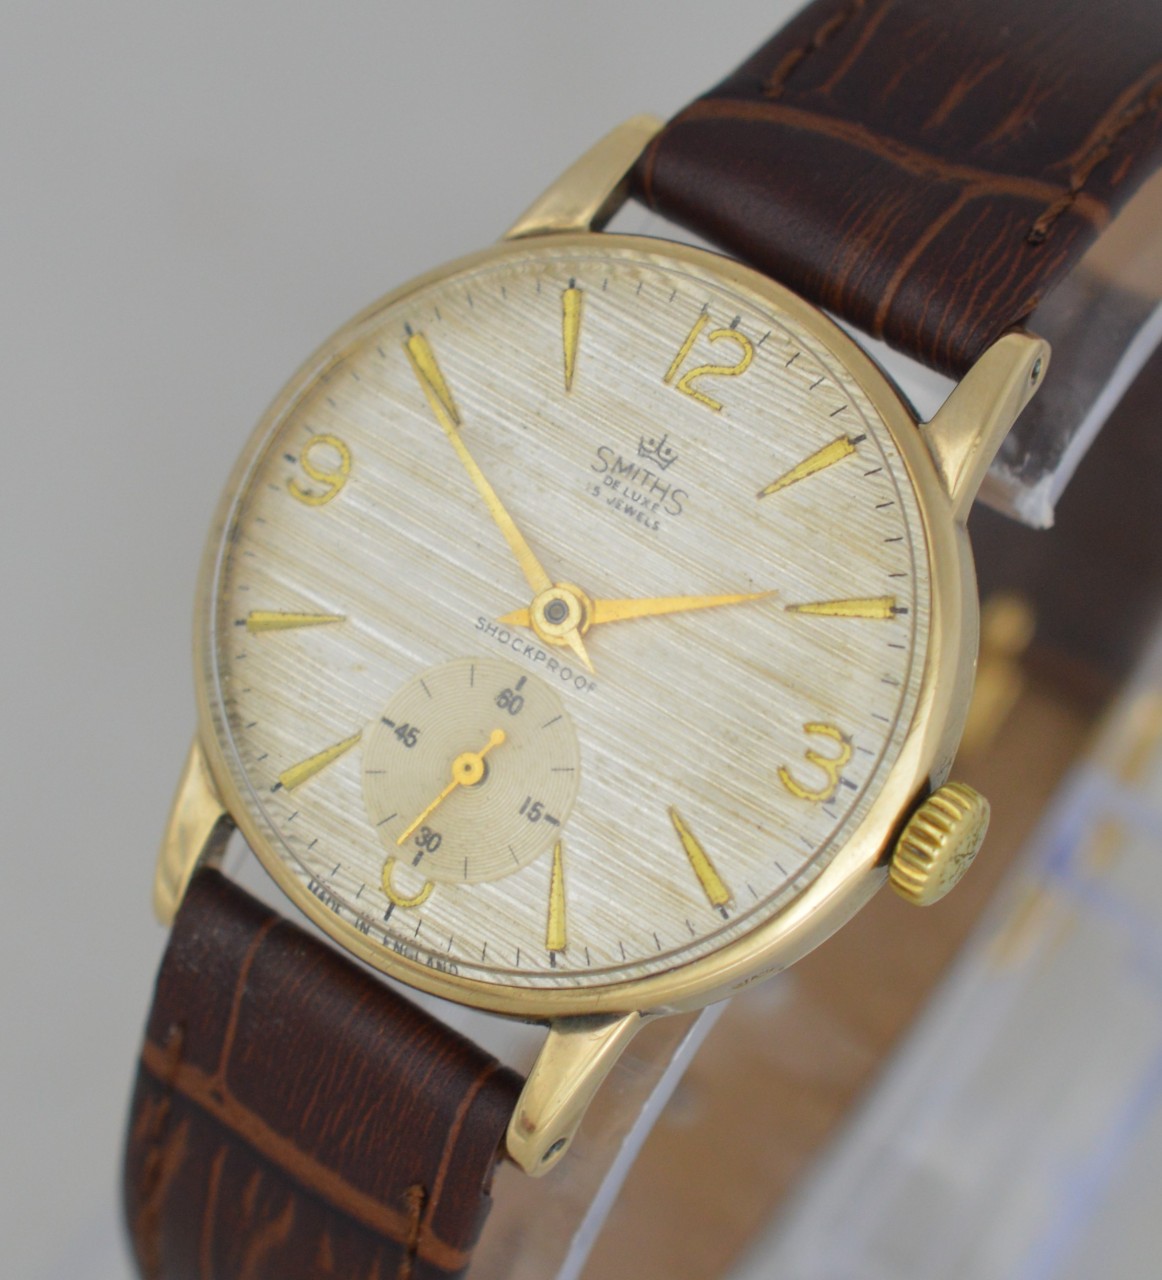 1965 Smiths De Luxe 9K Gold Wristwatch - Blog